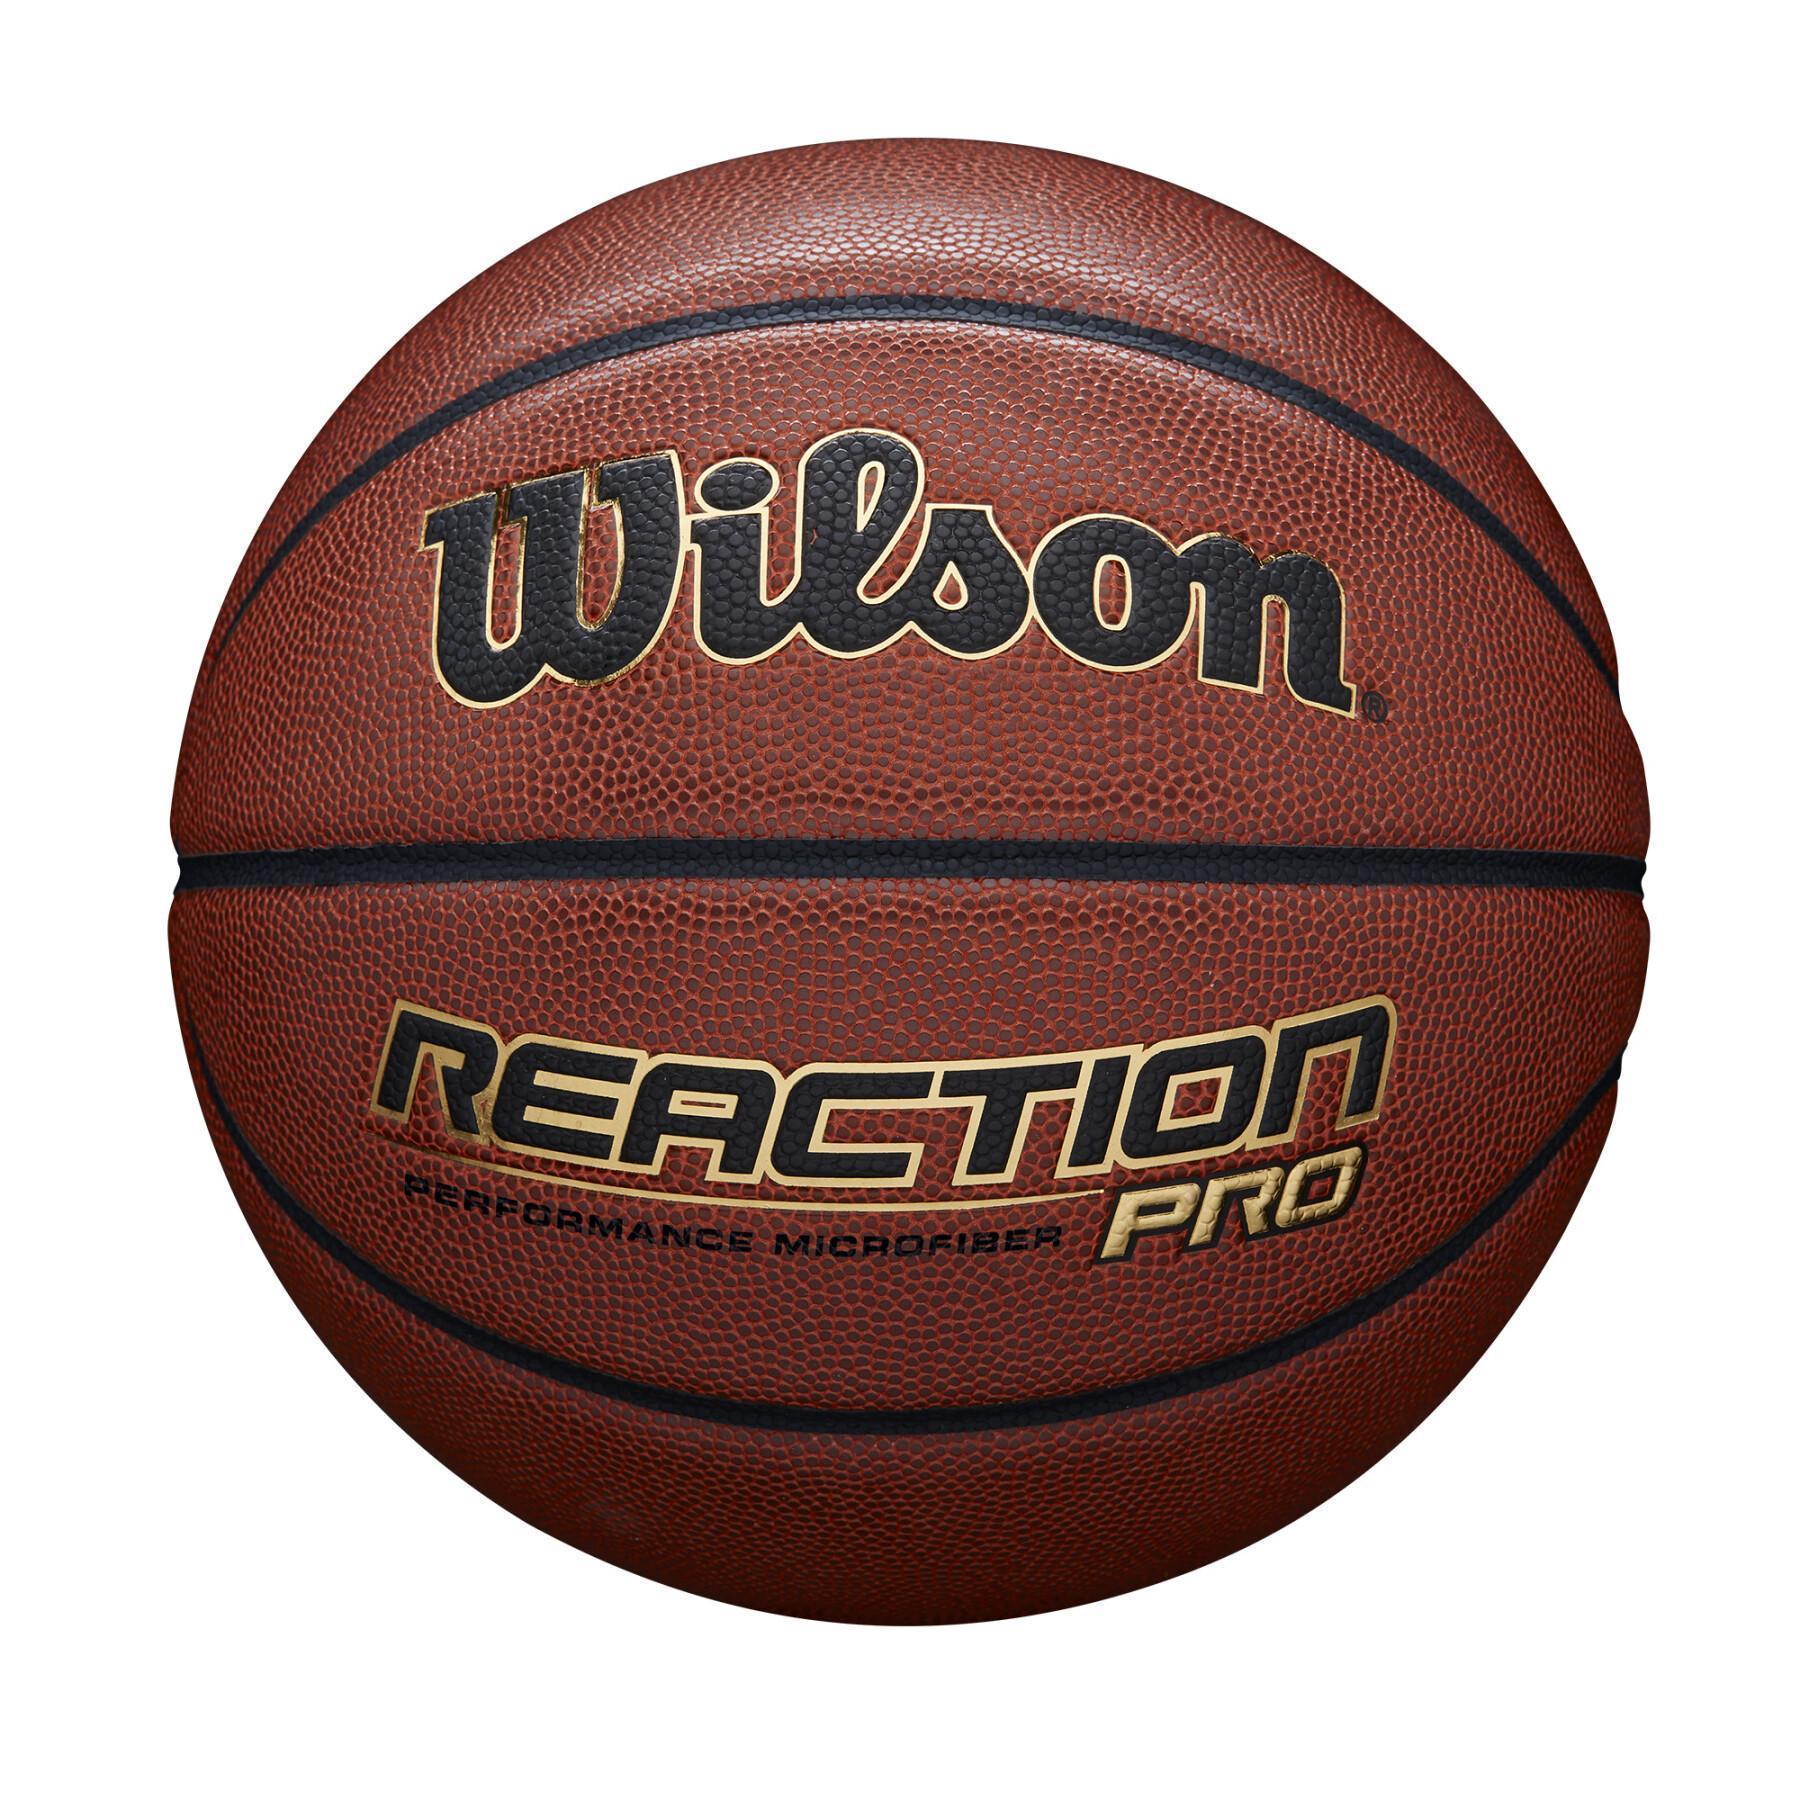 Reacção de balão pro Wilson